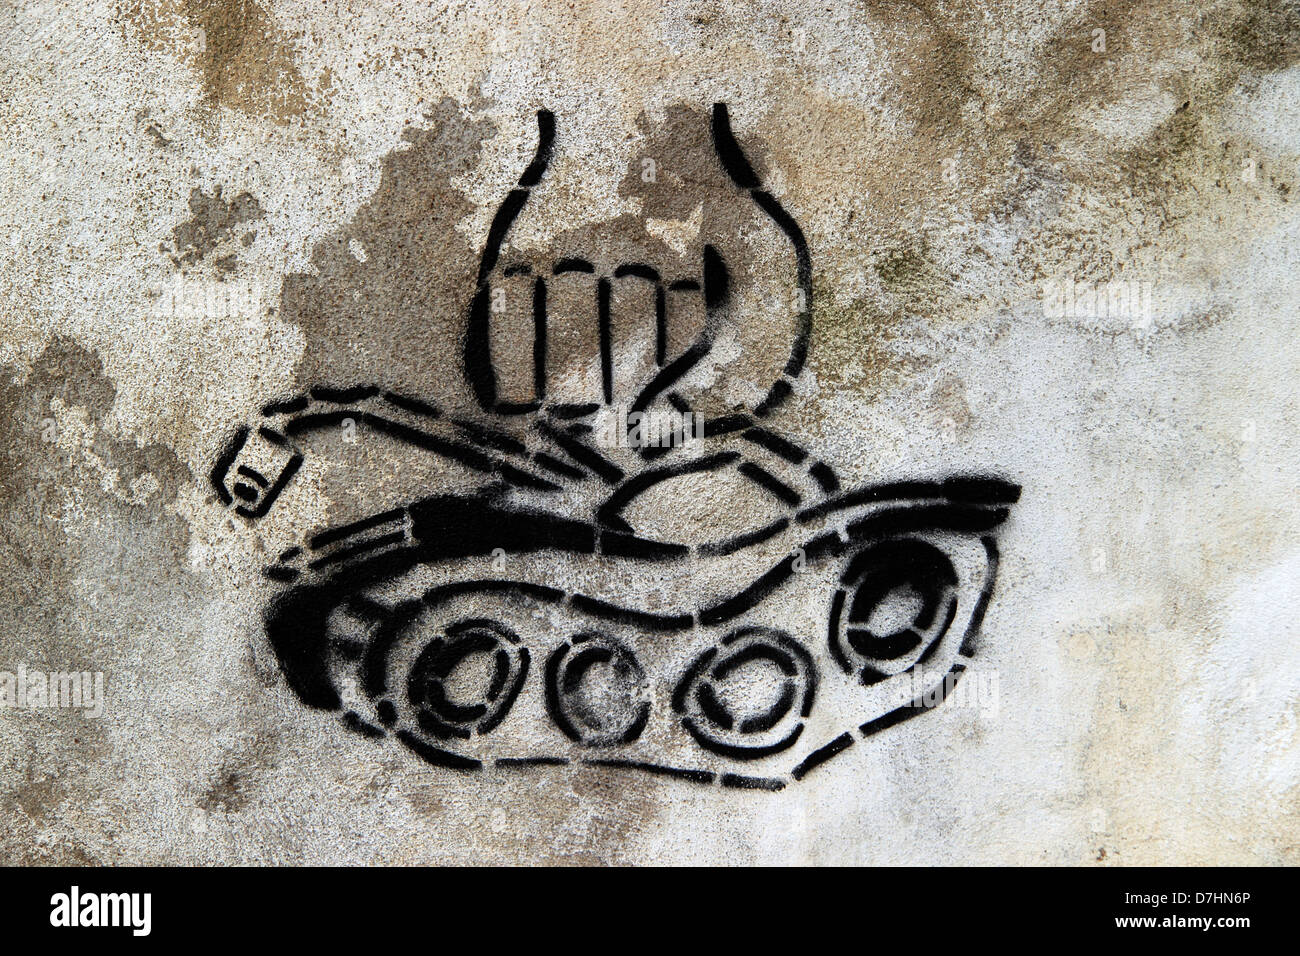 Politische Graffiti, Schablone an der Wand einer Faust Zerkleinerung eines Tanks, Lissabon, Portugal Stockfoto